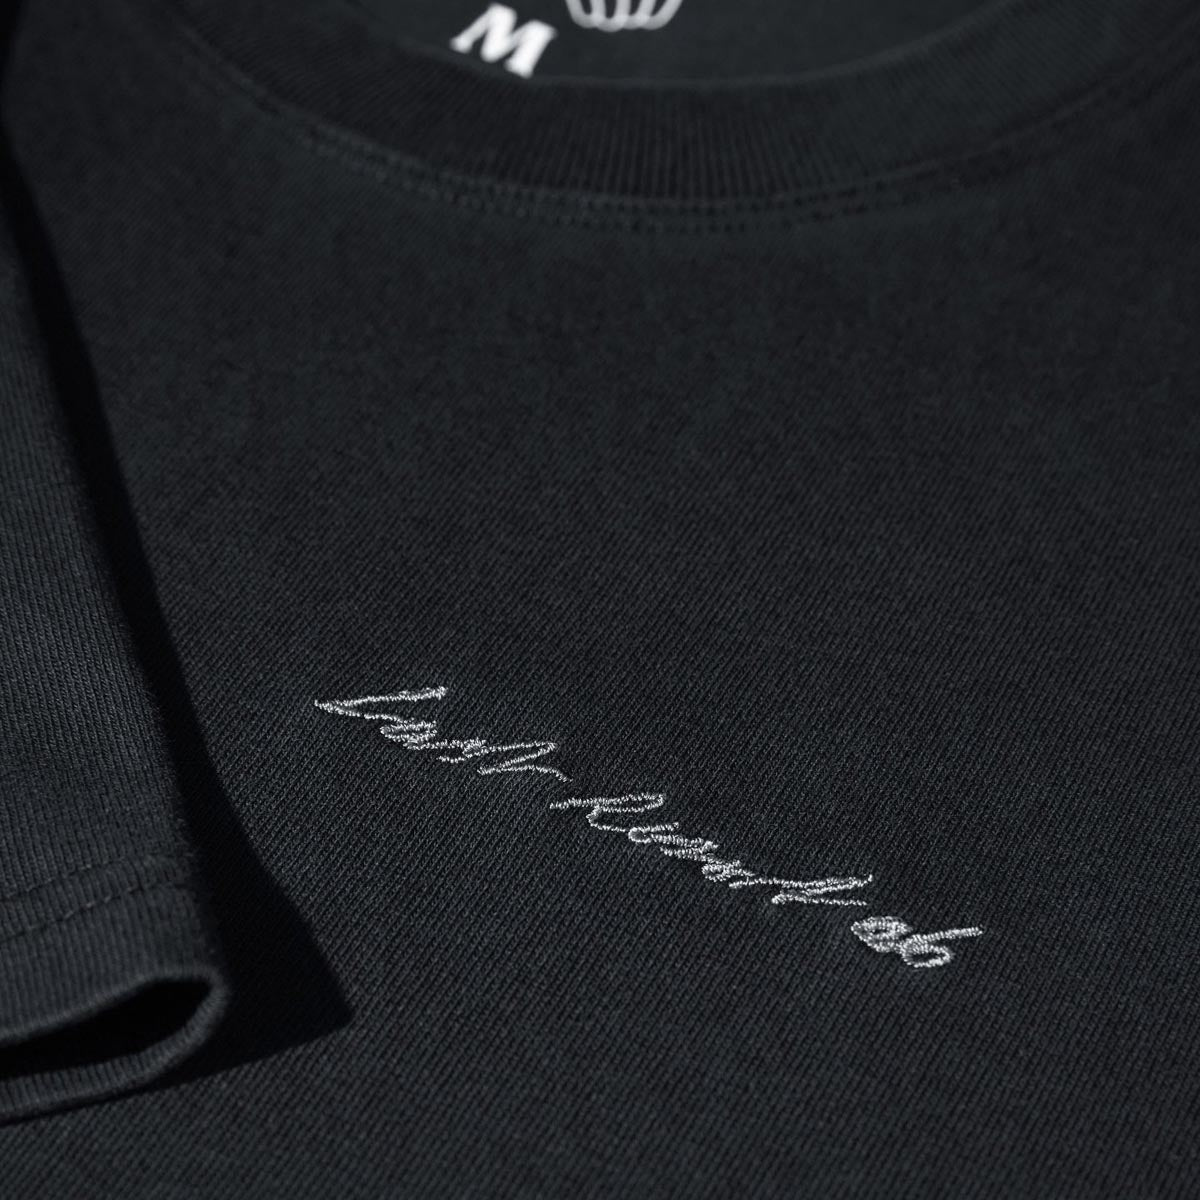 Last Resort AB Signature T-Shirt - Washed Black image 3